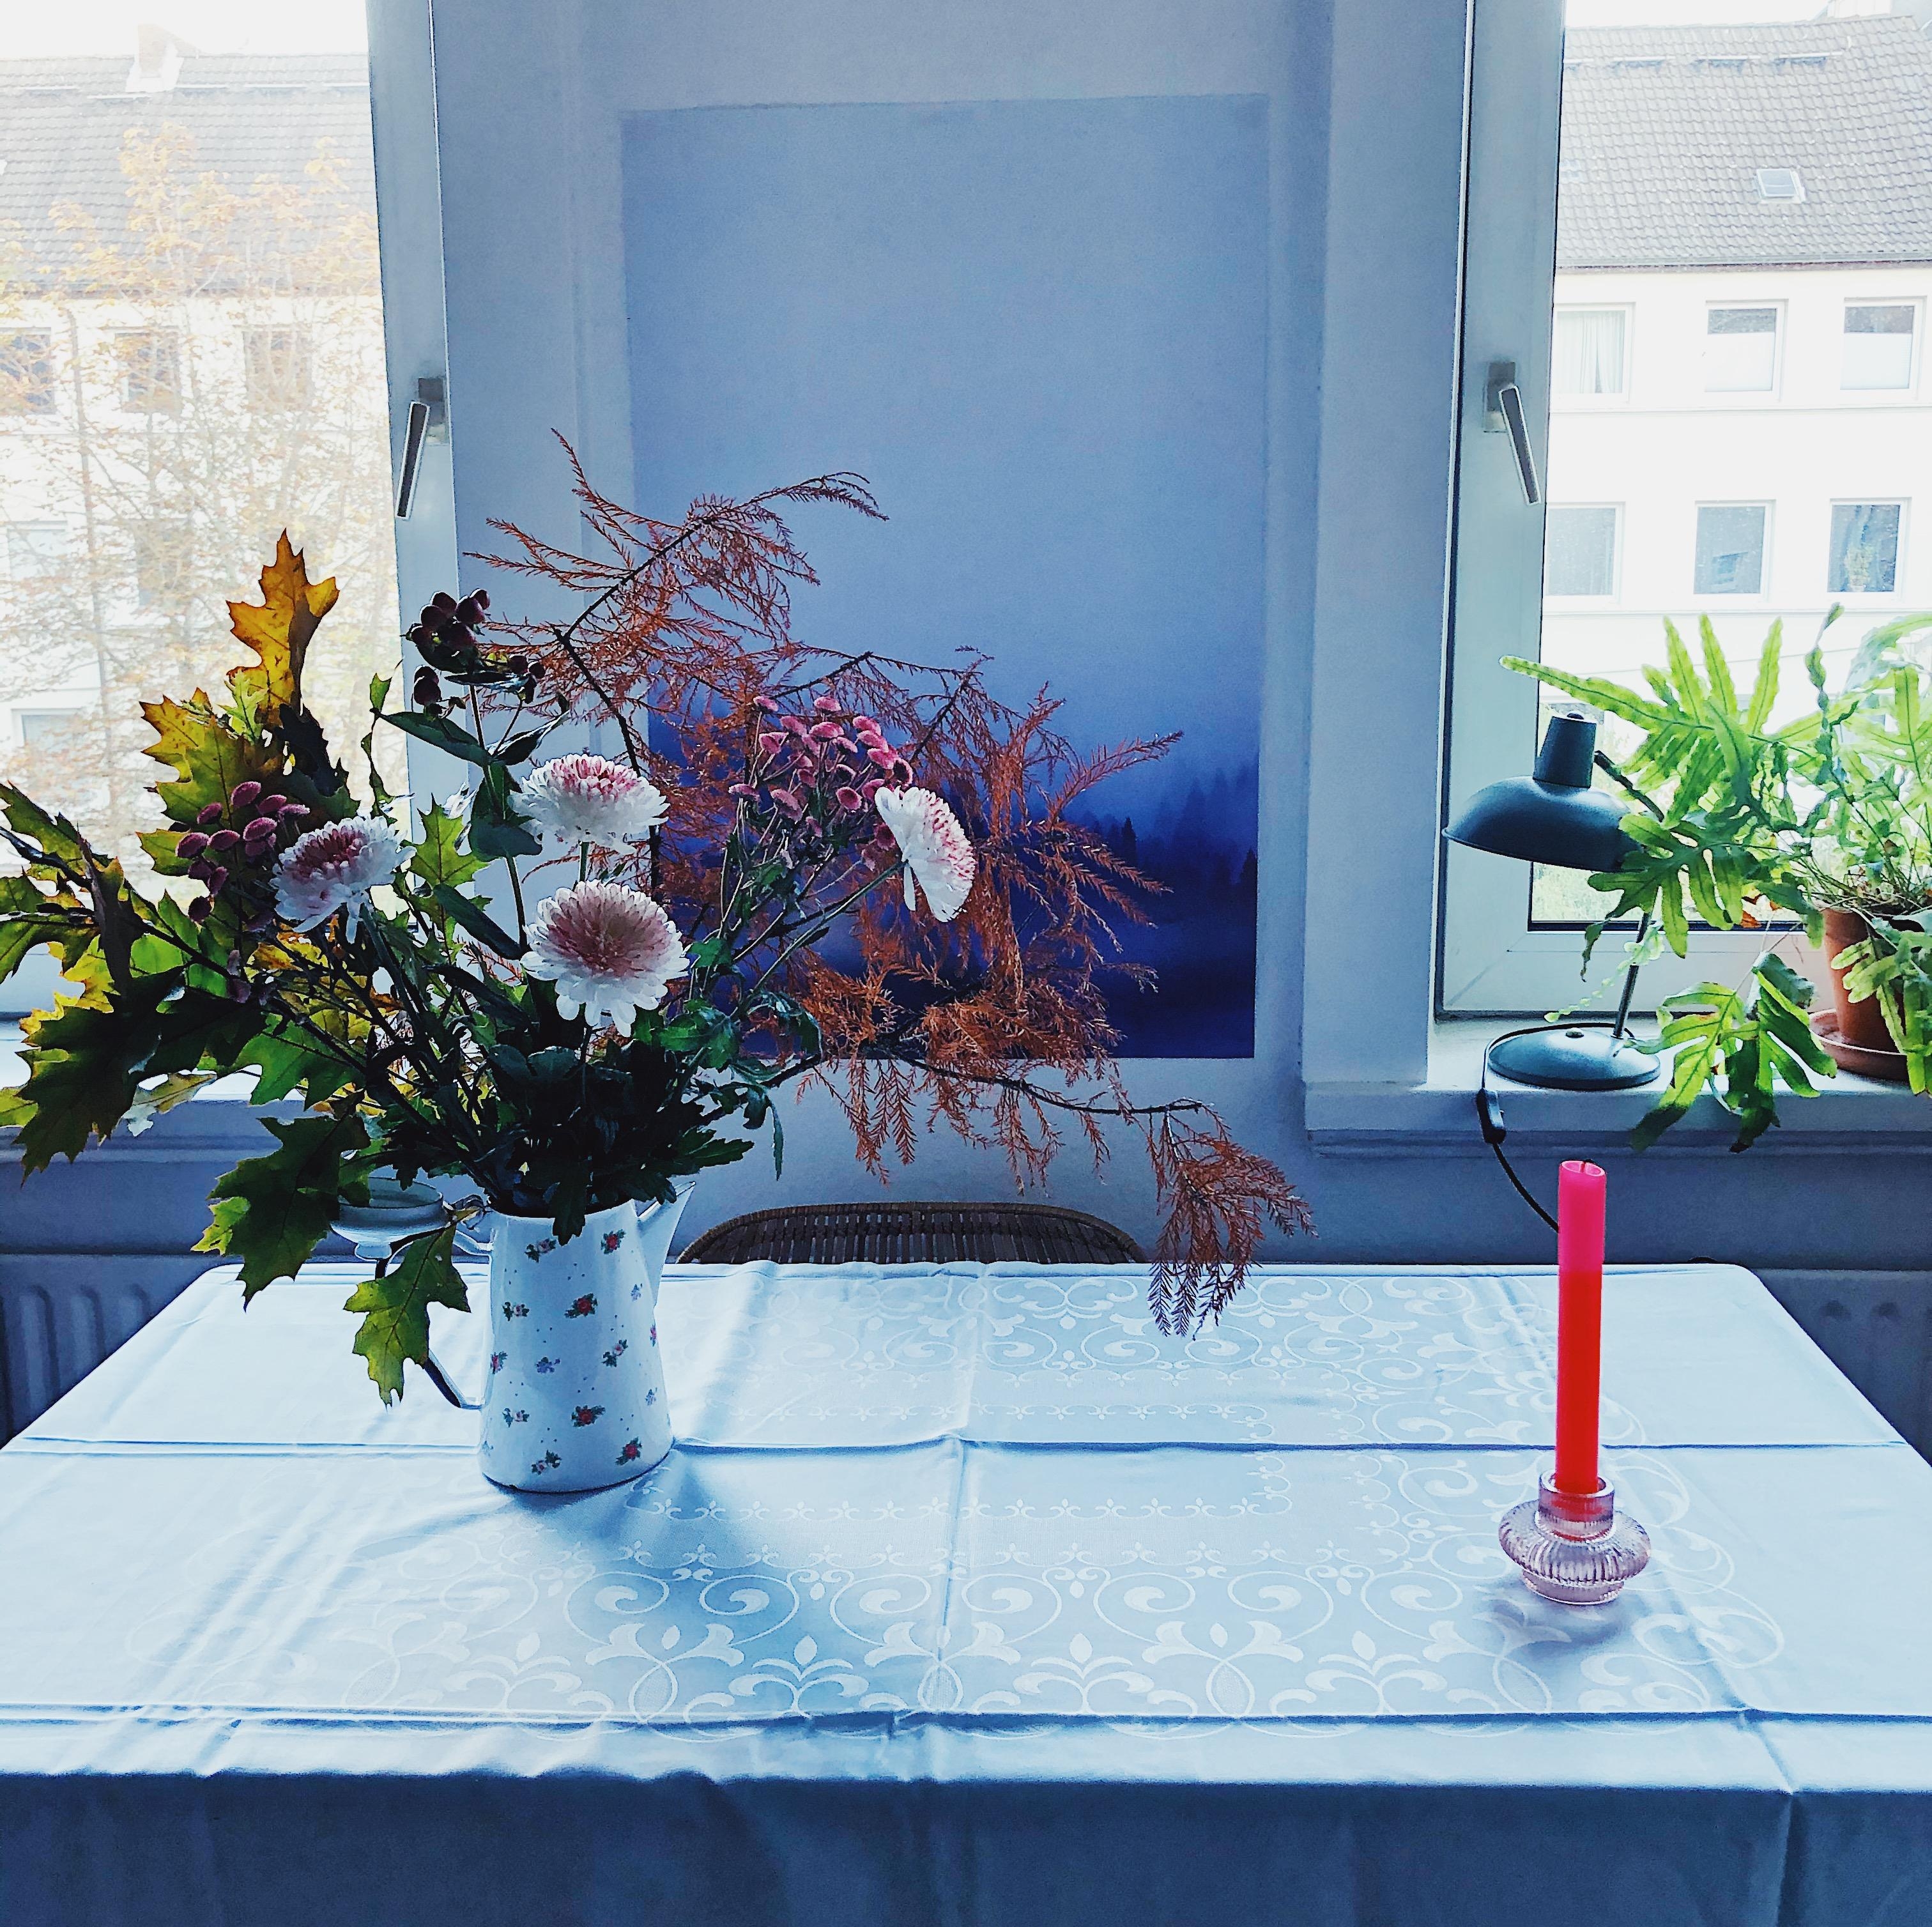 SATURDAYLOVE
#Esstisch #Table #Blumen #Freshflowers #Samstagmorgen #Wohnzimmer